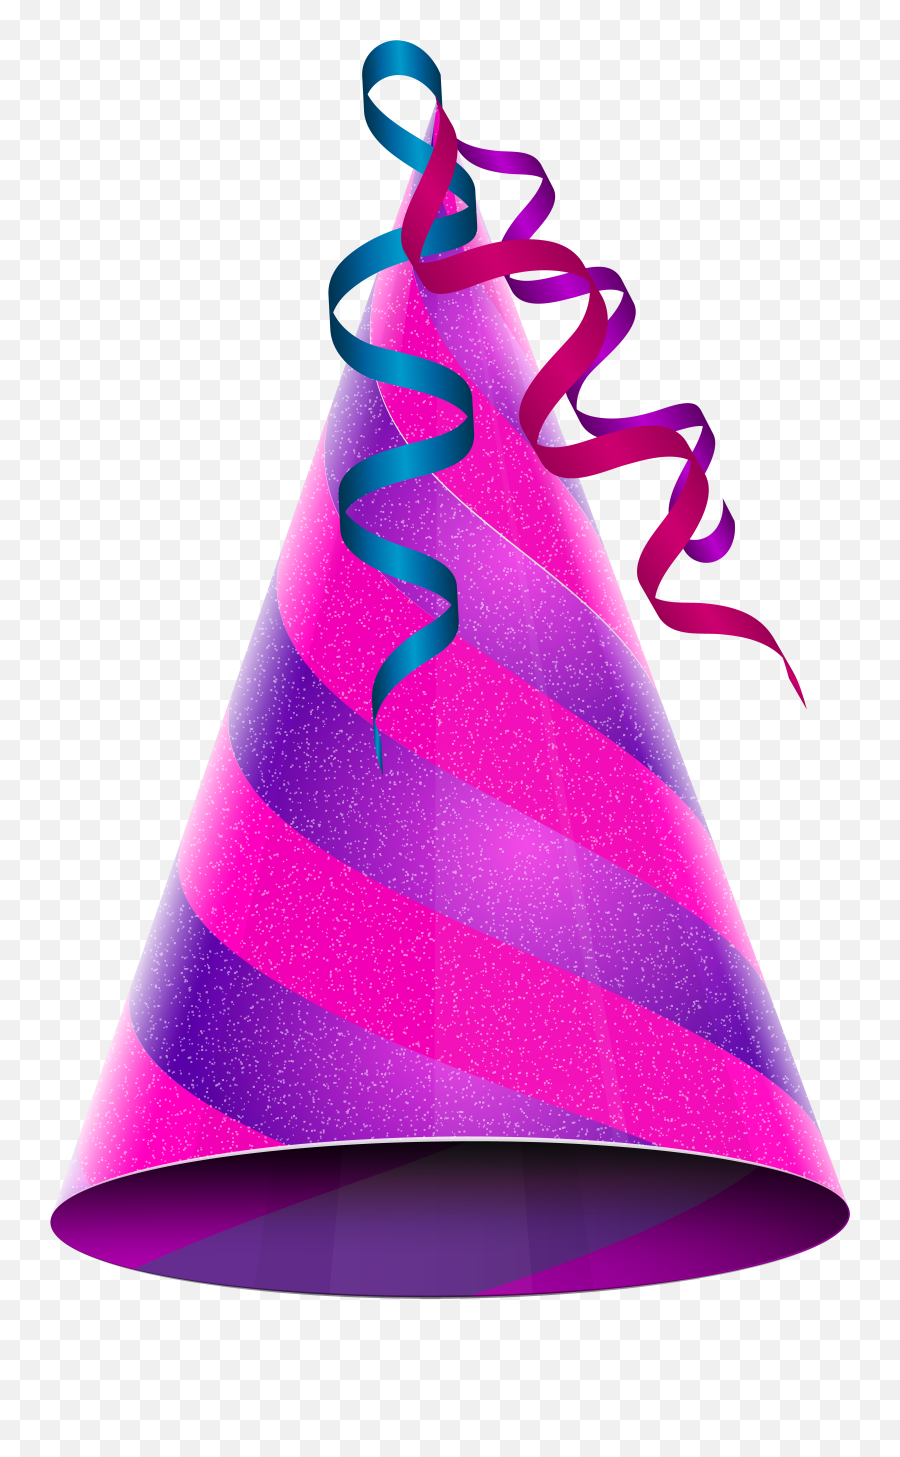 Birthday Cake Party Hat Clip Art - Birthday Party Hat Clip Art Emoji,Party Hat Emoji